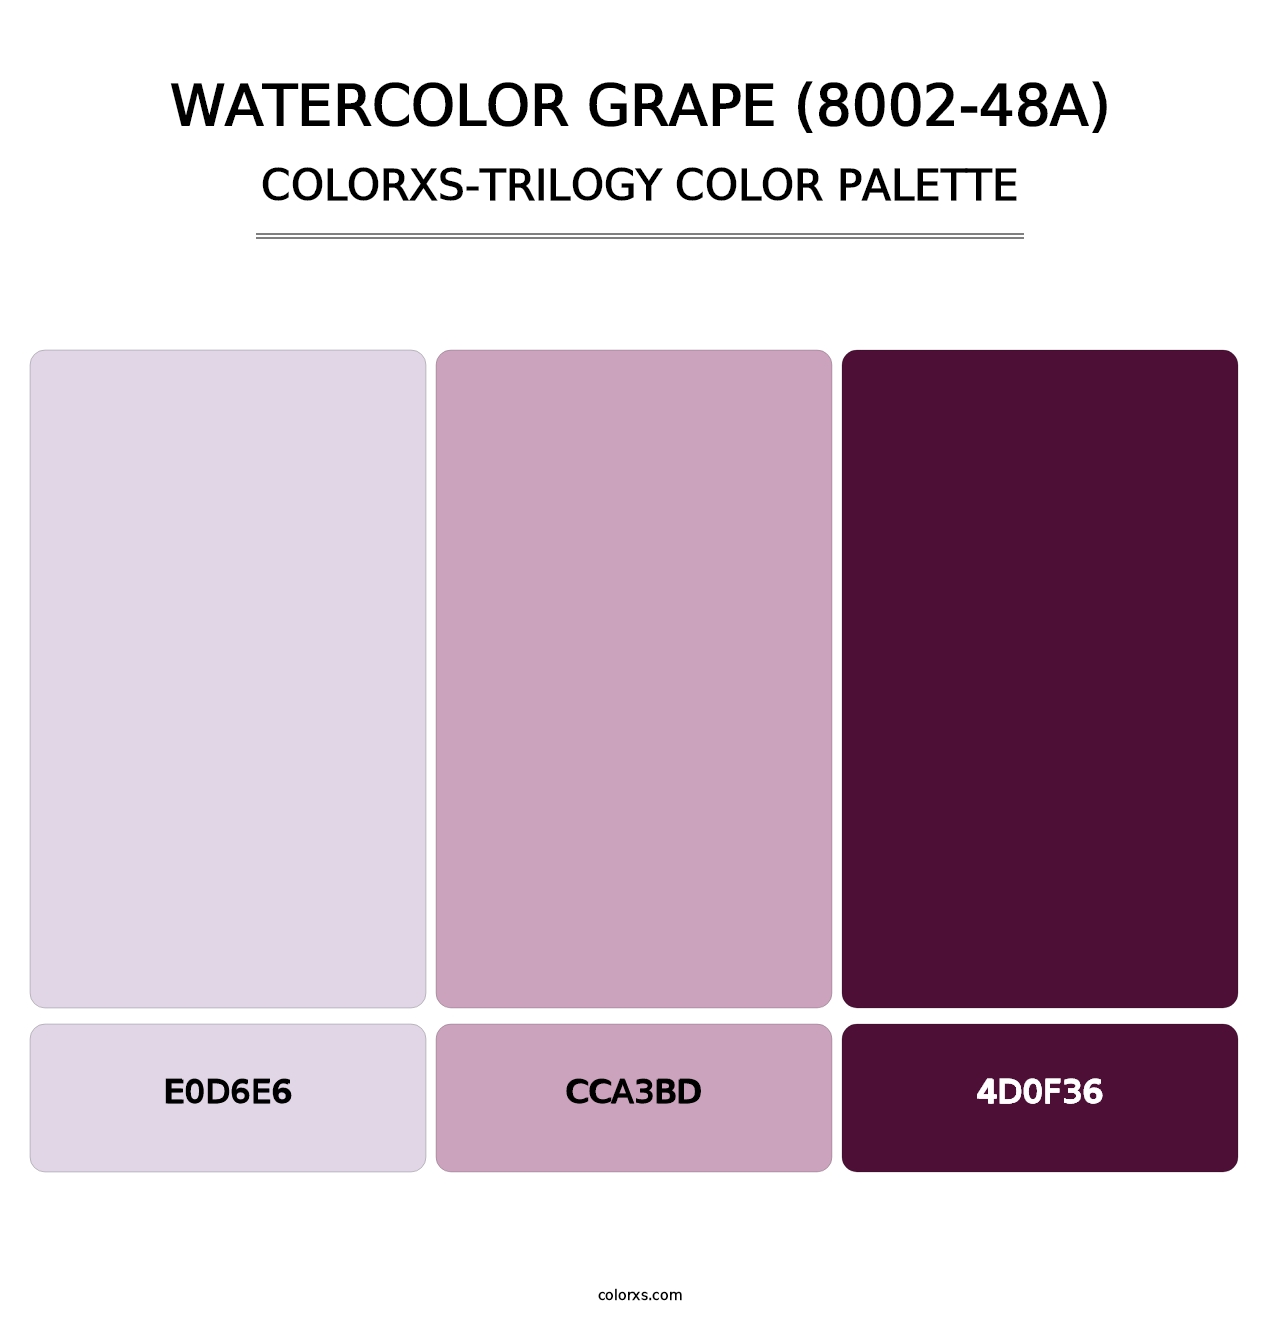 Watercolor Grape (8002-48A) - Colorxs Trilogy Palette